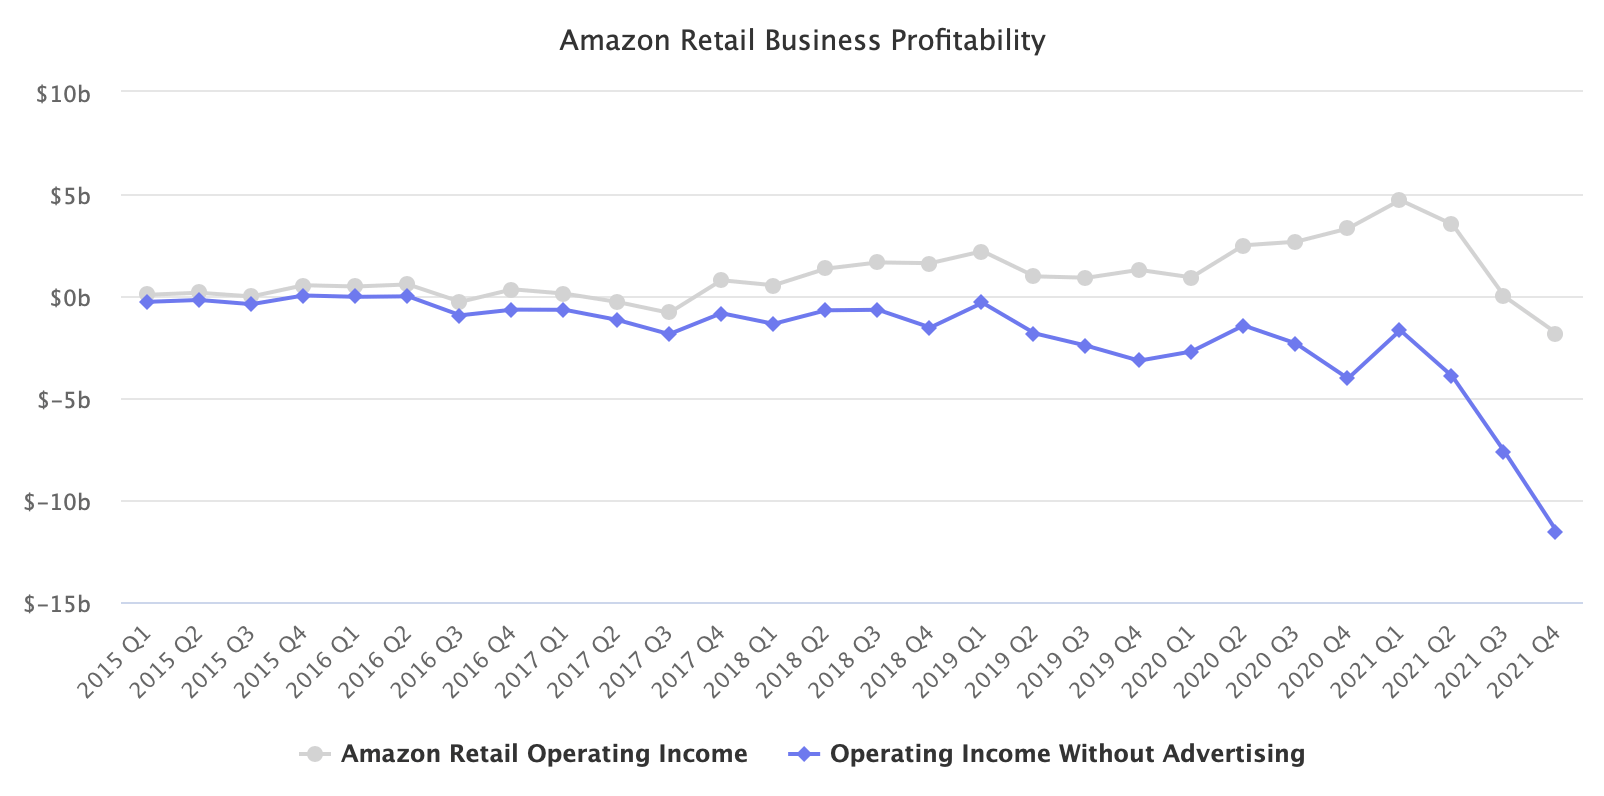 Amazon Retail Business Profitability